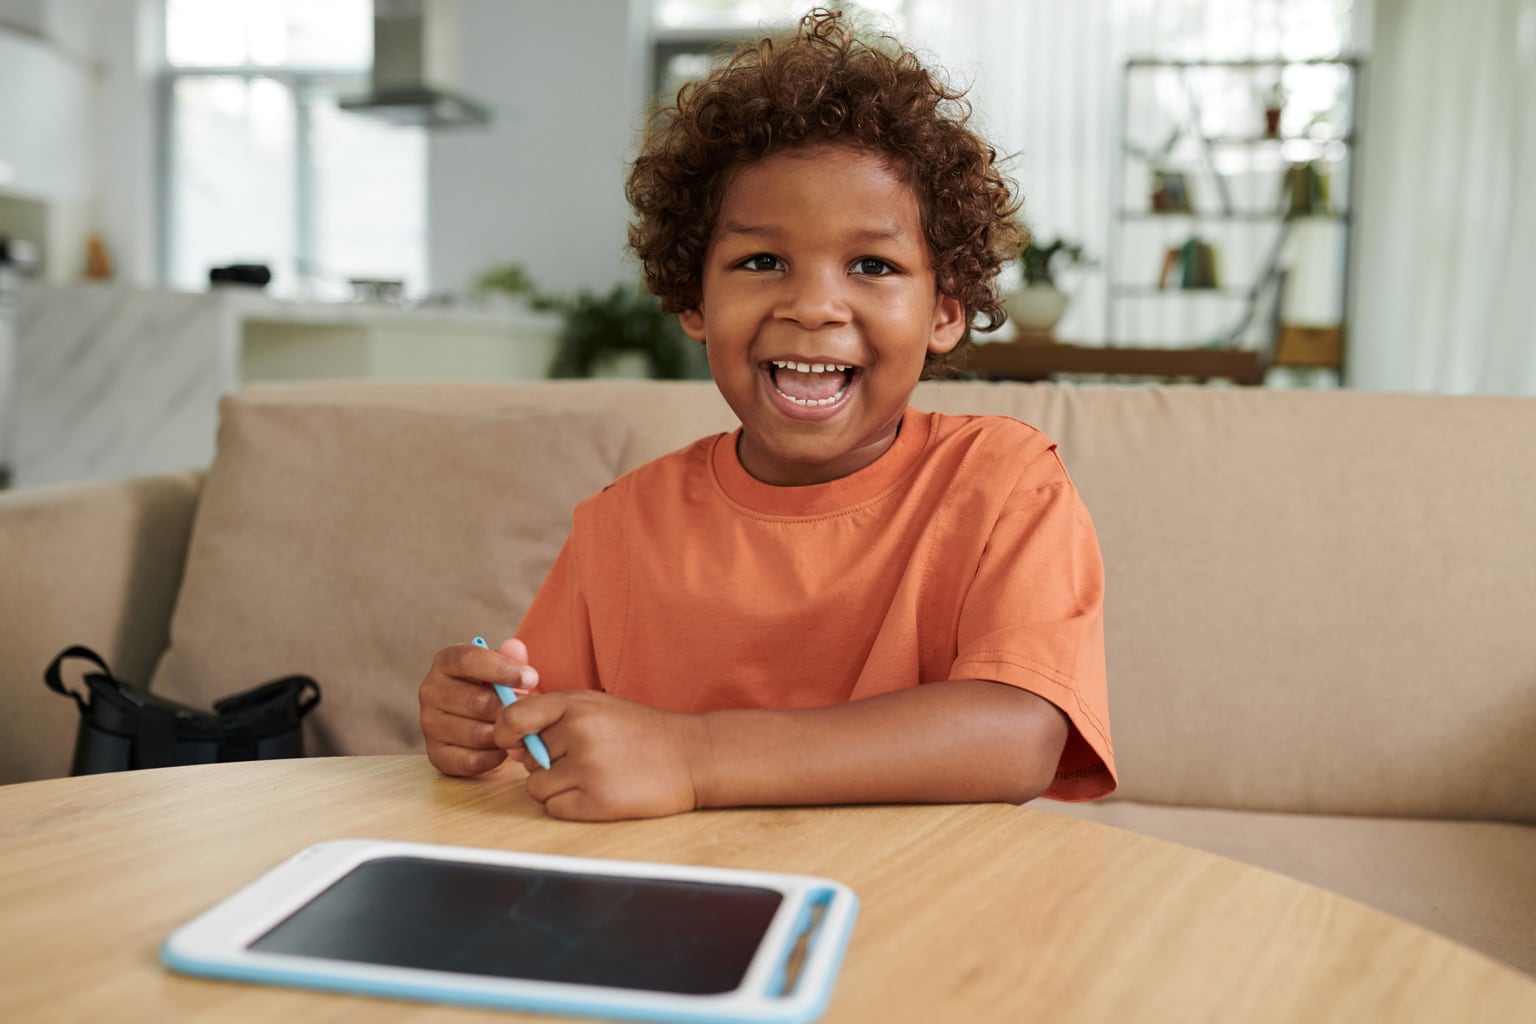 menino afrodescendente sorrindo para camera em frente a tablet na mesa representando crianças na internet